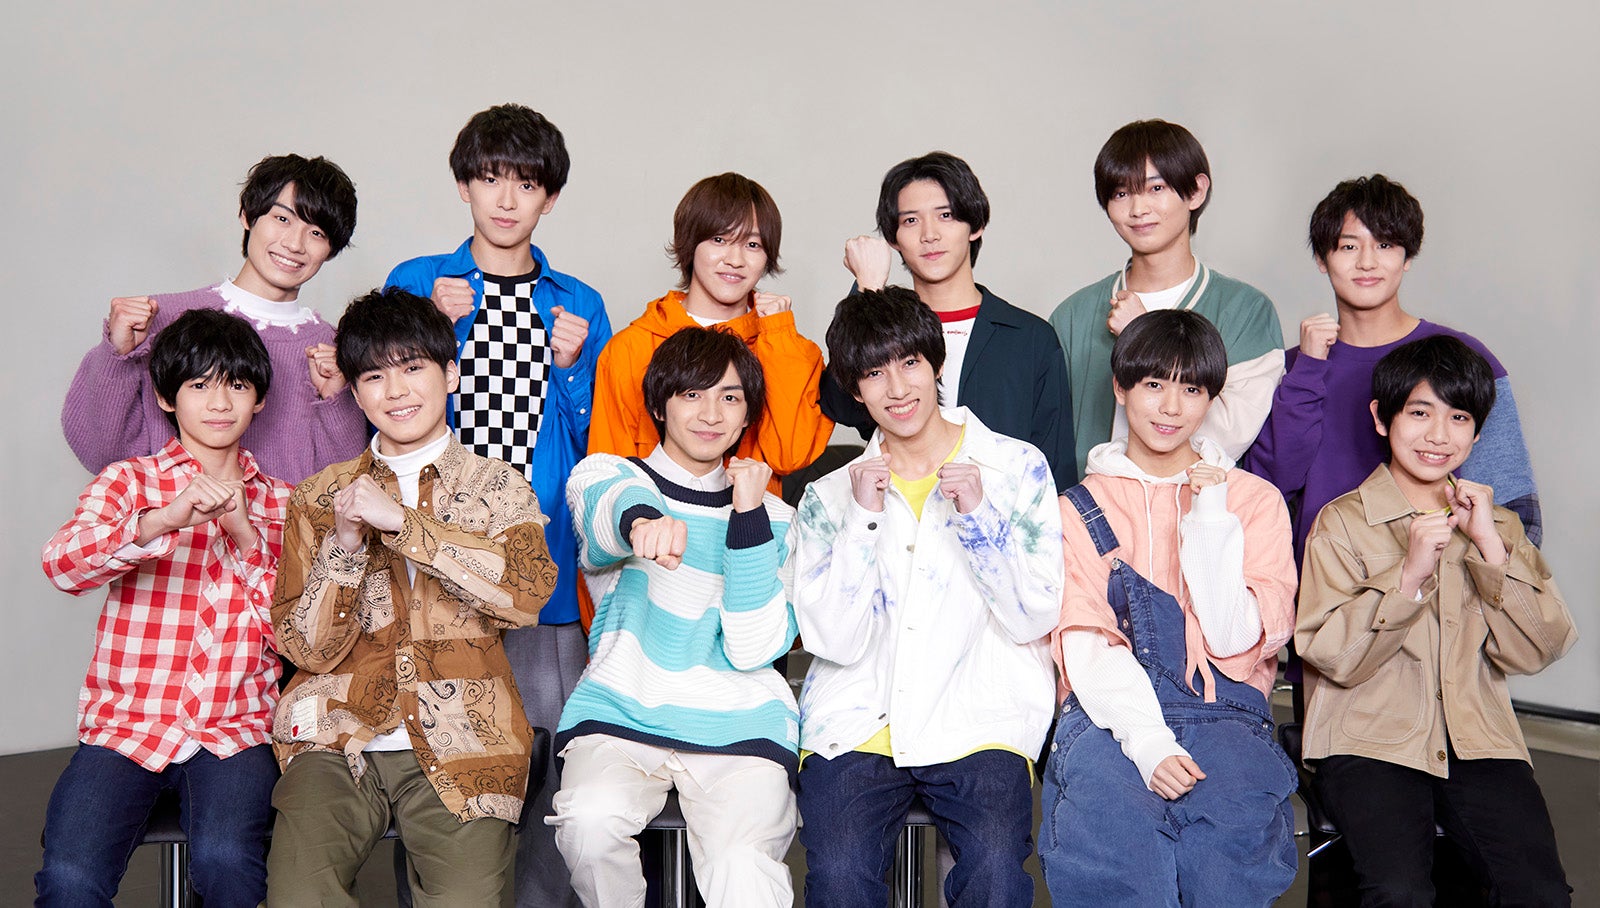 少年忍者12名の初主演ドラマ「文豪少年！」関連番組が決定 - モデルプレス